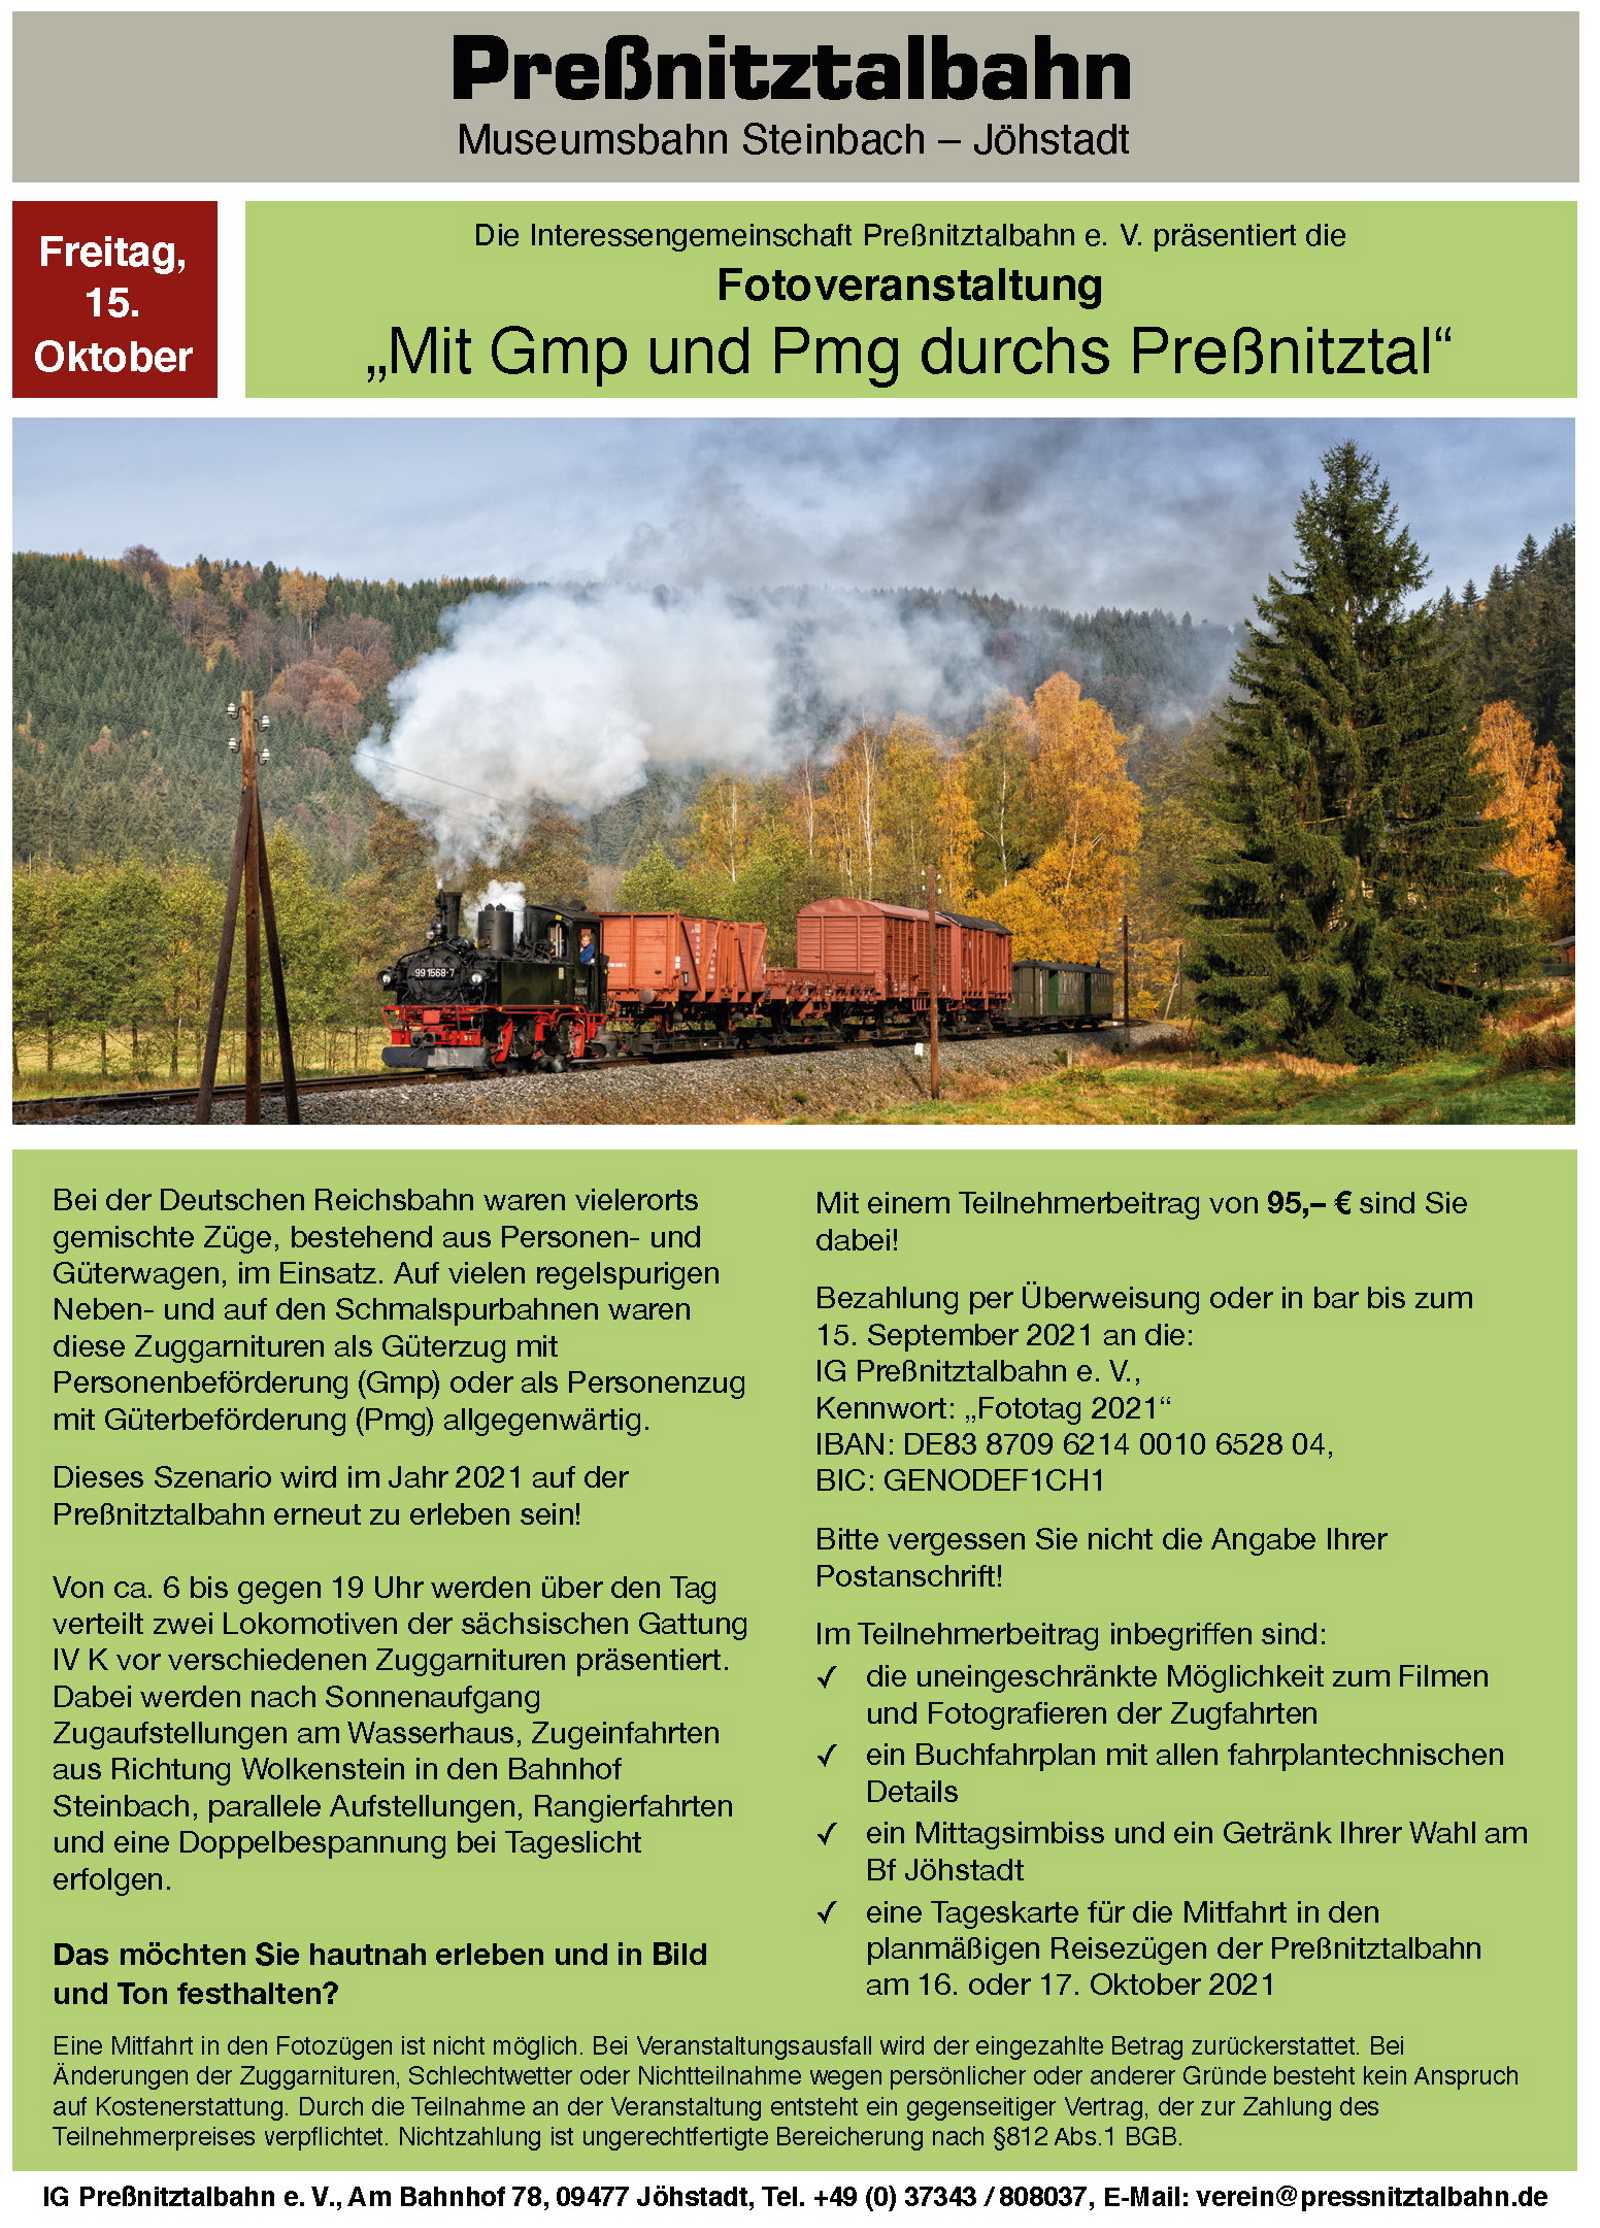 Veranstaltungsankündigung 15. Oktober 2021: Fotoveranstaltung „Mit Gmp und Pmg durchs Preßnitztal“